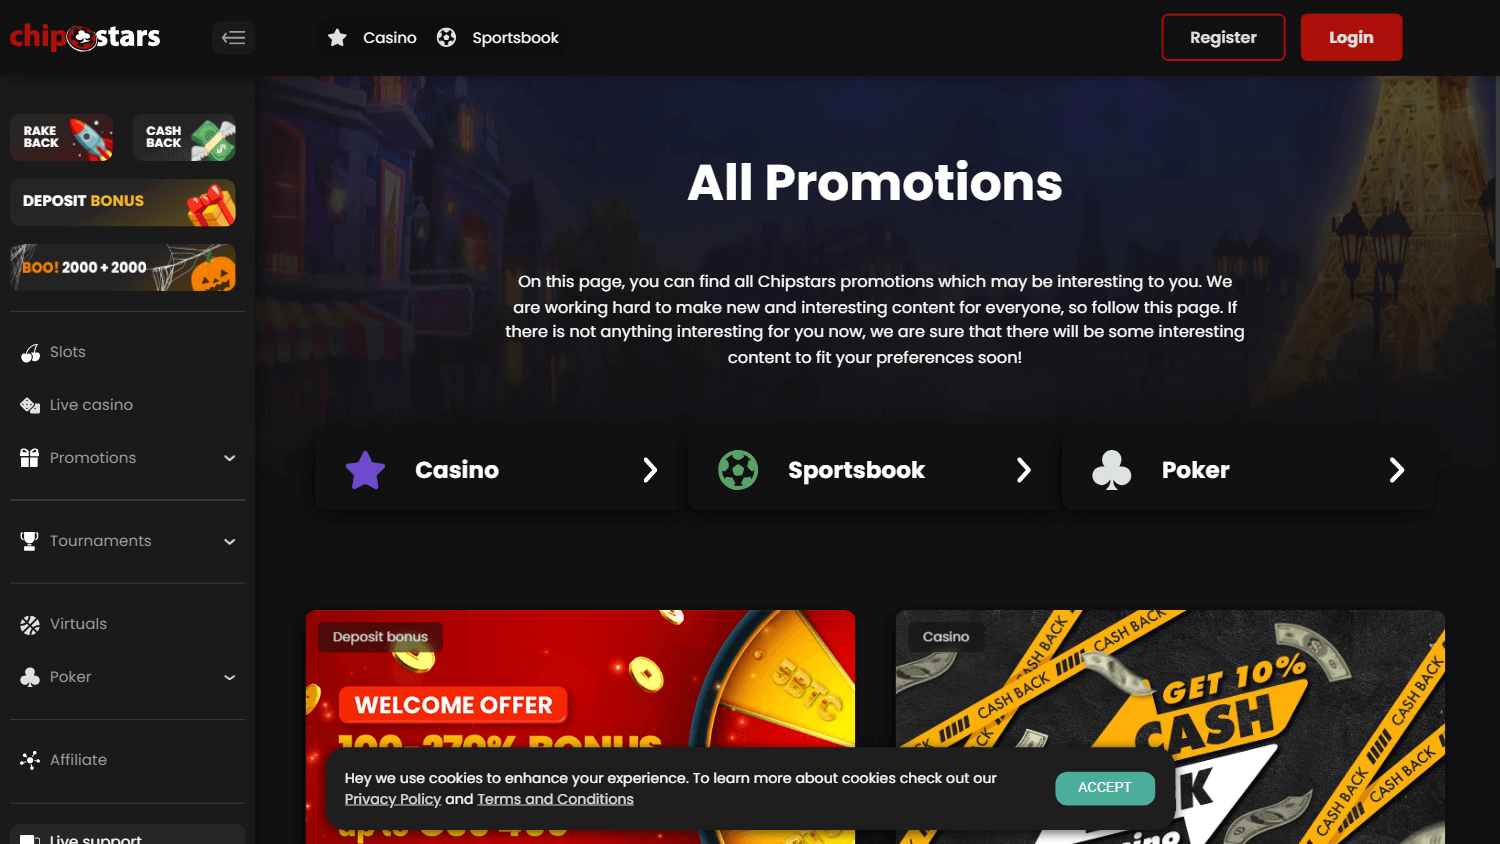 chipstars_casino_promotions_desktop